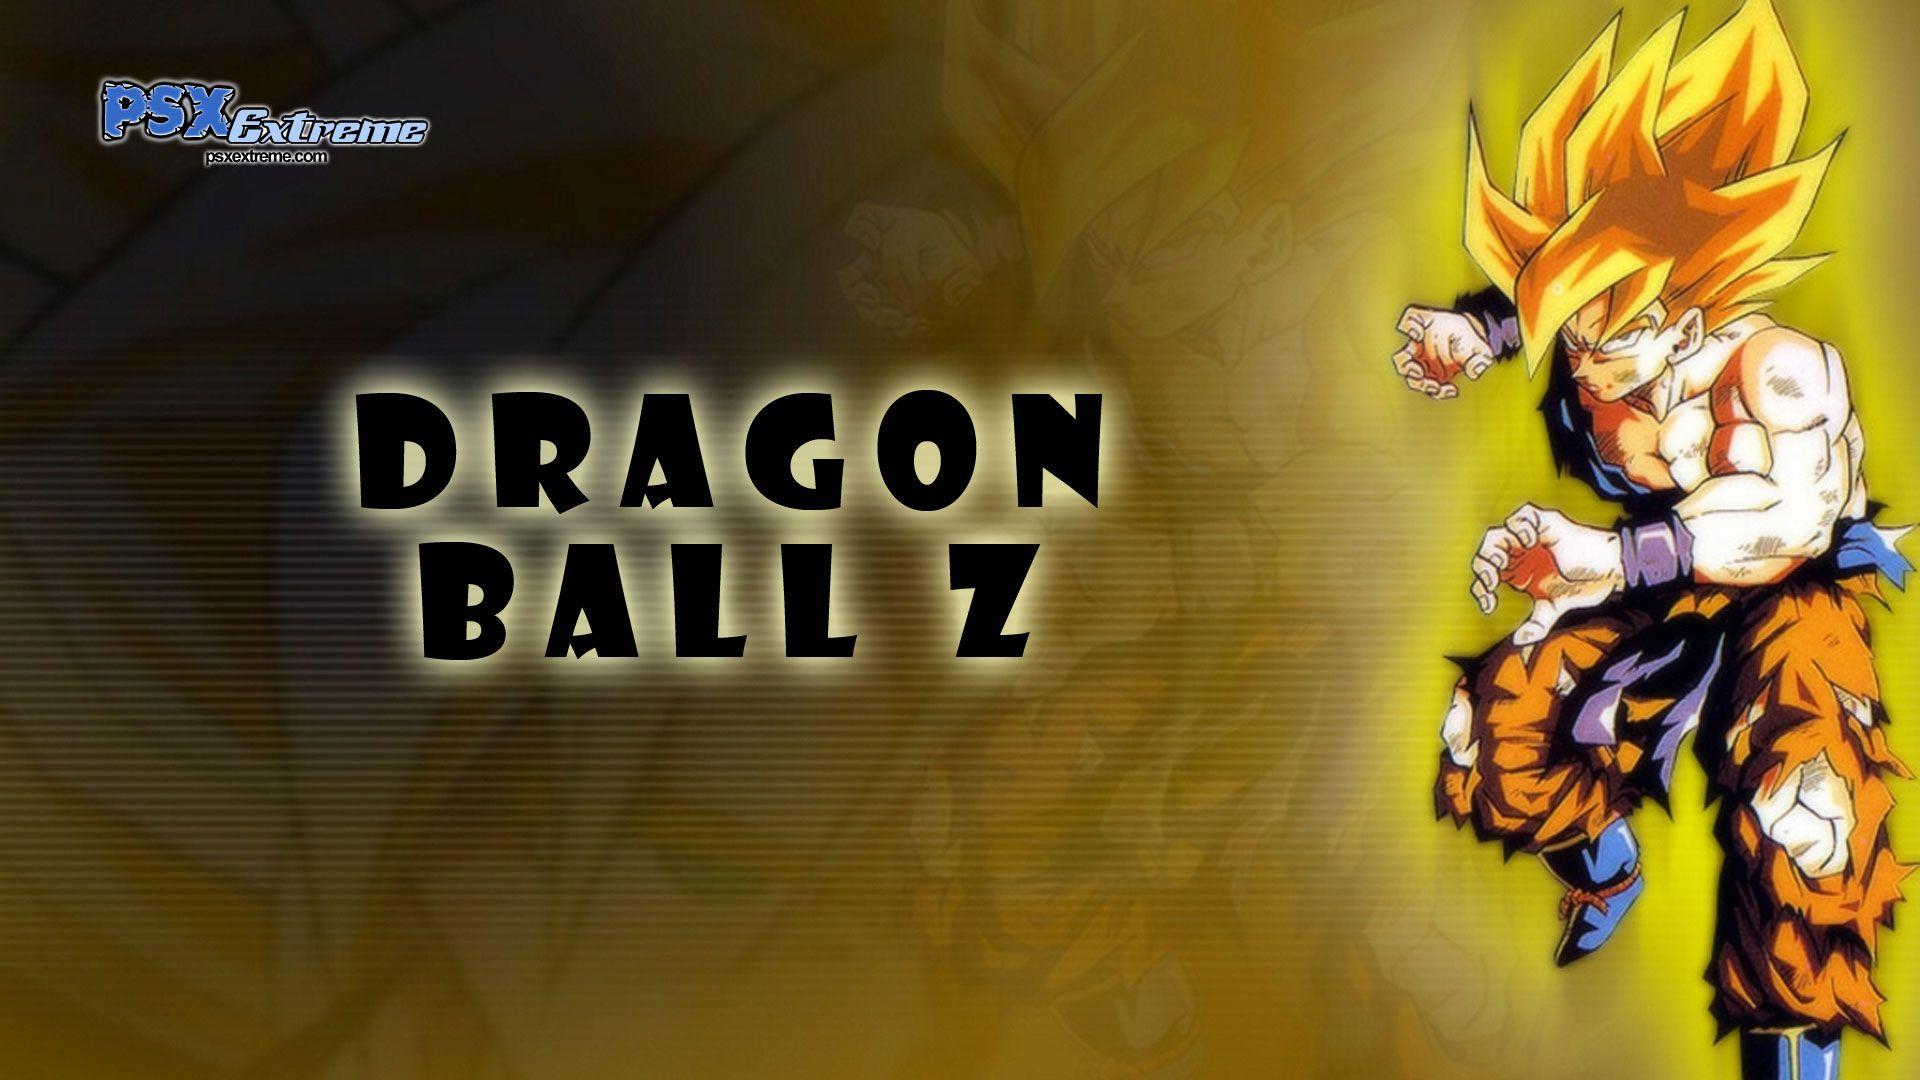 Dragon Ball Z Wallpaper Free